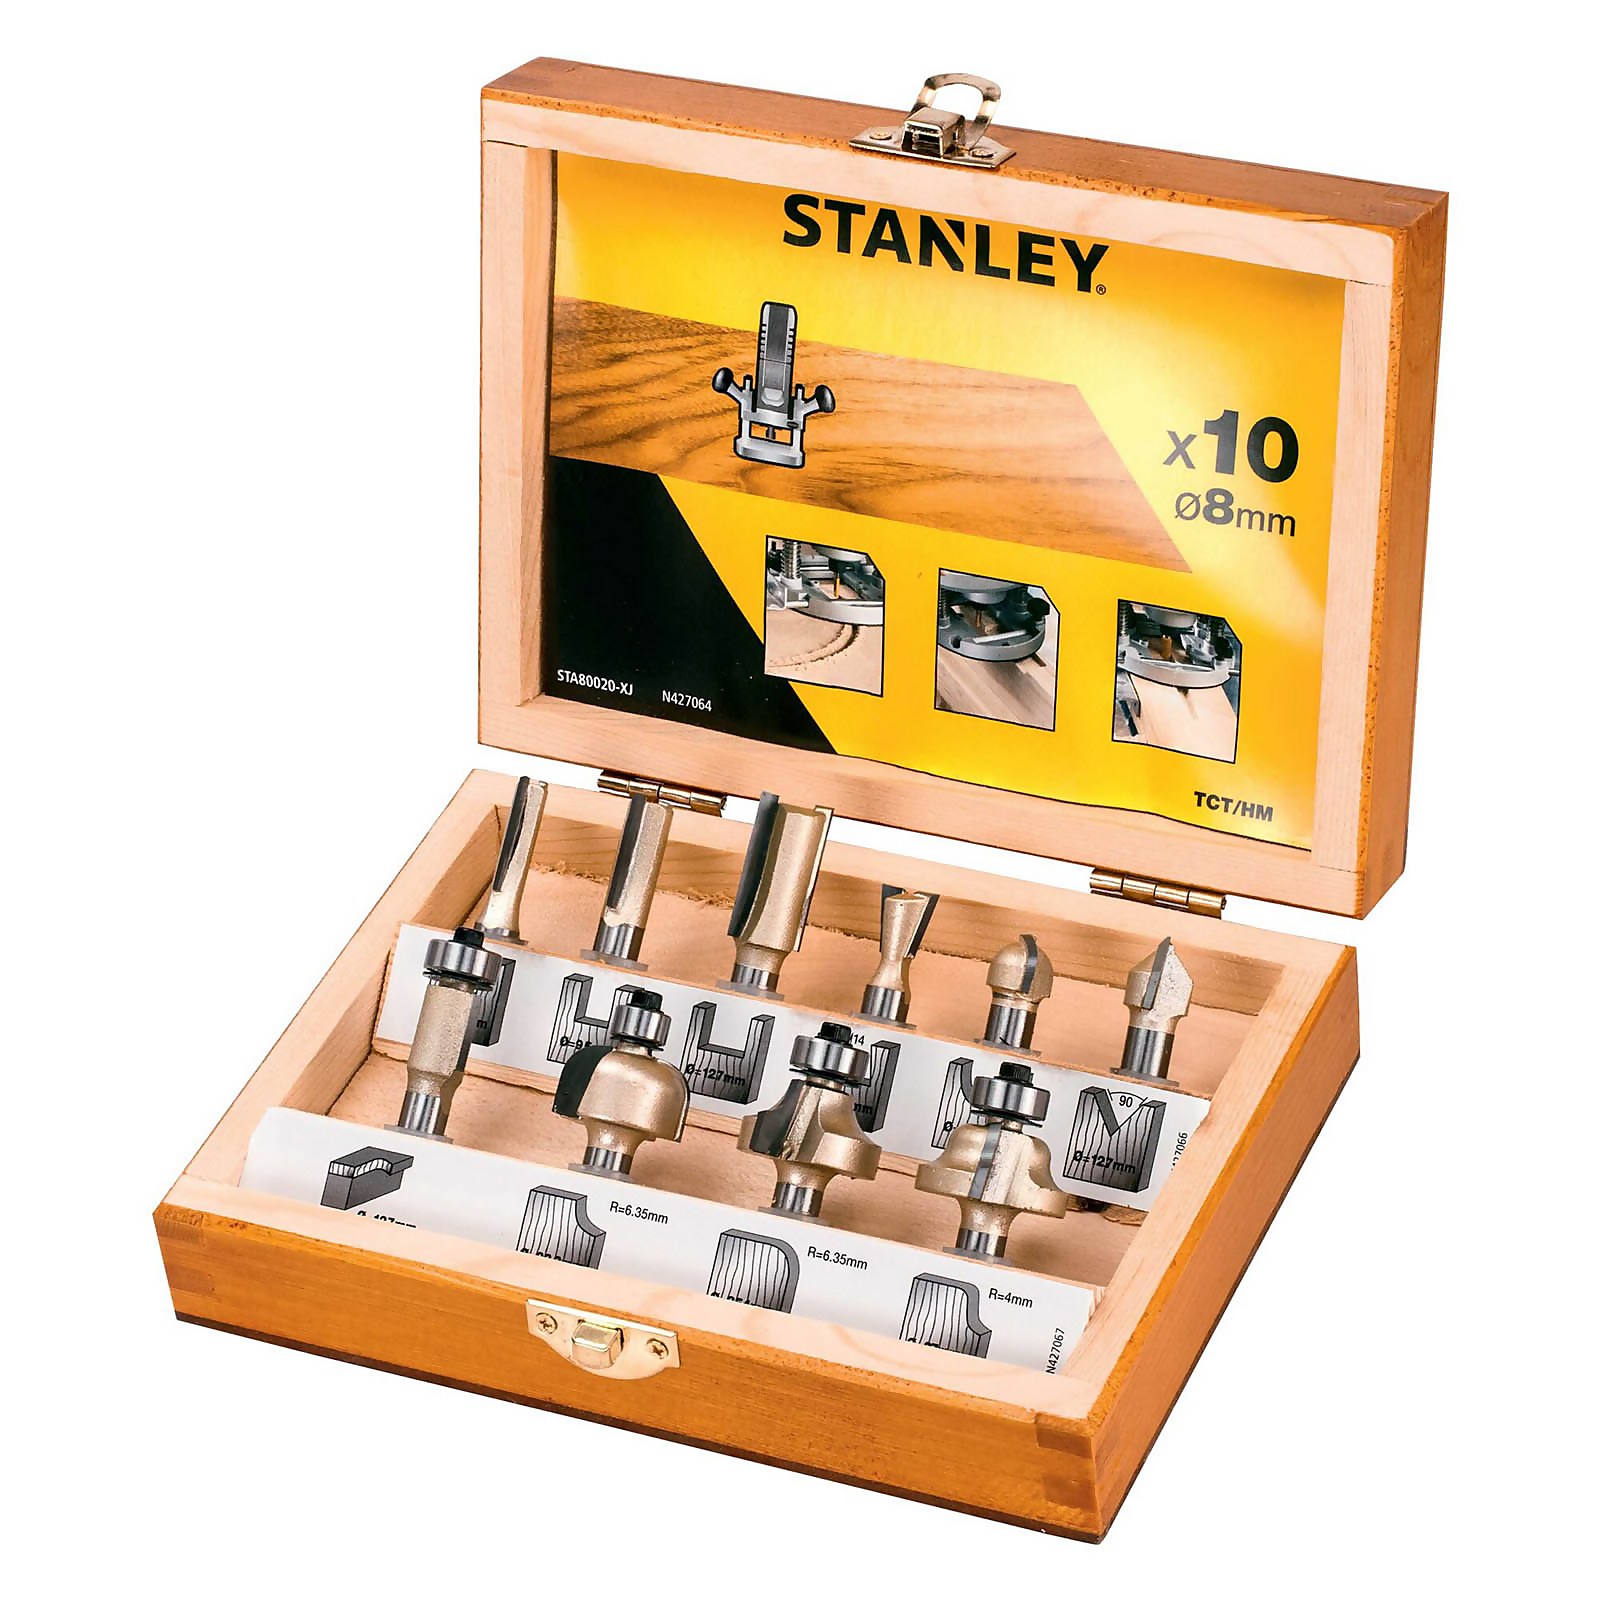 Photo of Stanley 8mm Tungsten Carbide Tip Router Bit Set – 10 Pieces -sta80020-xj-